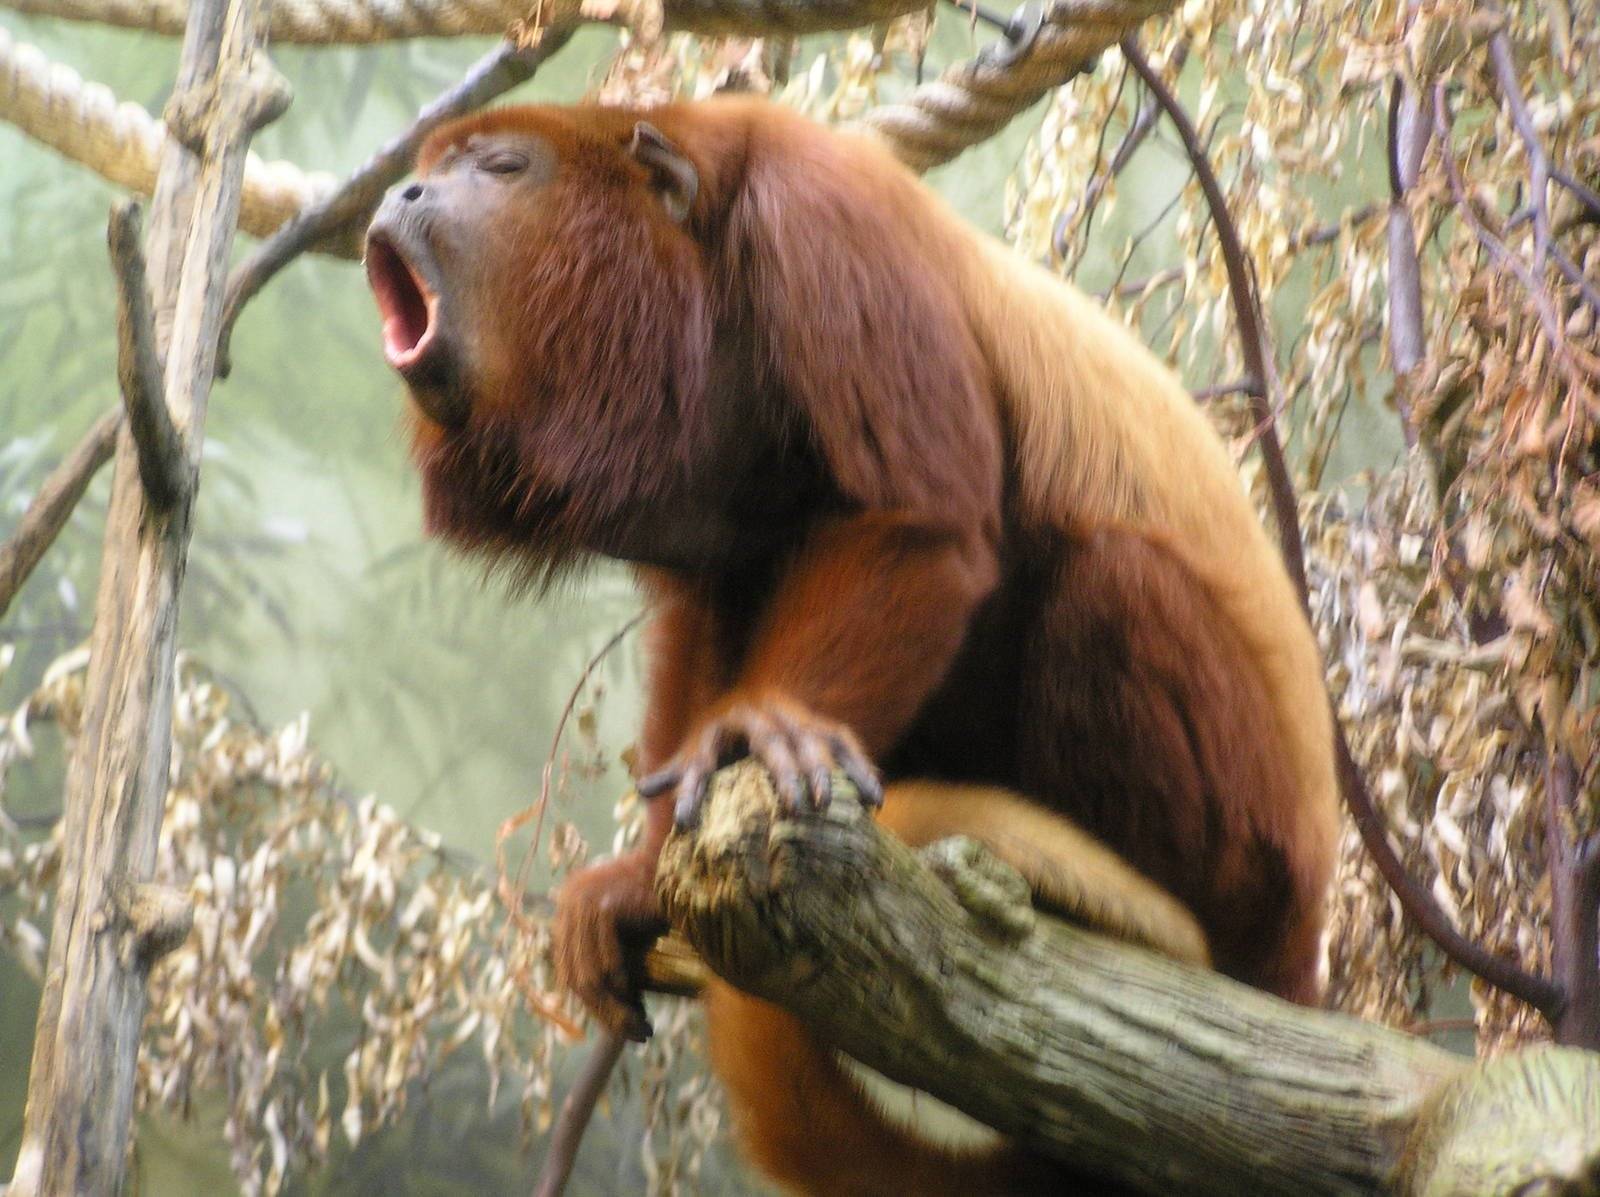 Ревун: интересные факты о широконосой обезьяне